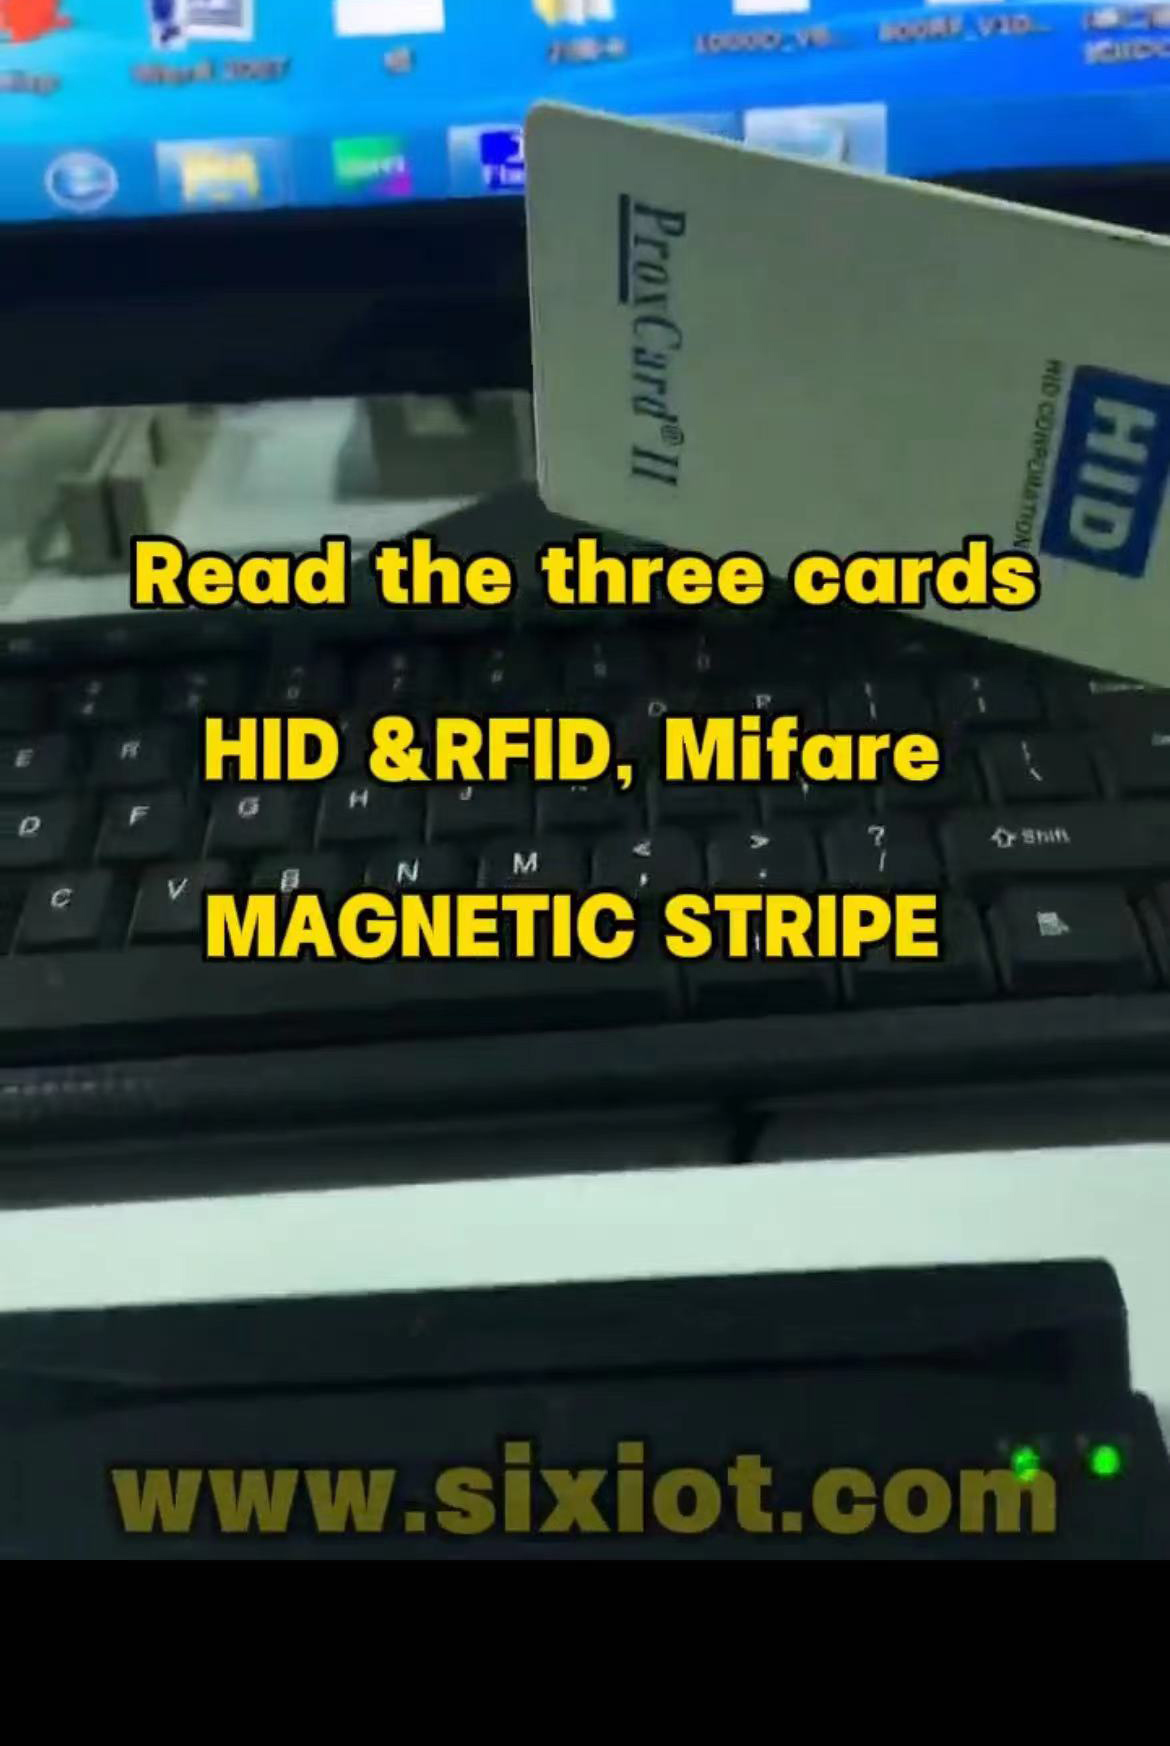 HID &RFID, MifareMAGNETIC STRIPE READER